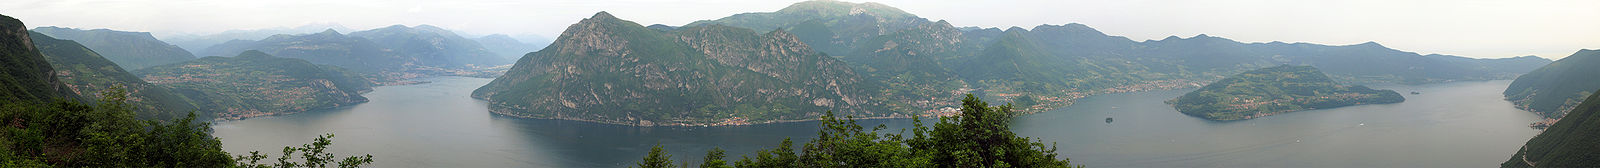 Panorama von Belvedere / Parzanica auf den Lago d'Iseo